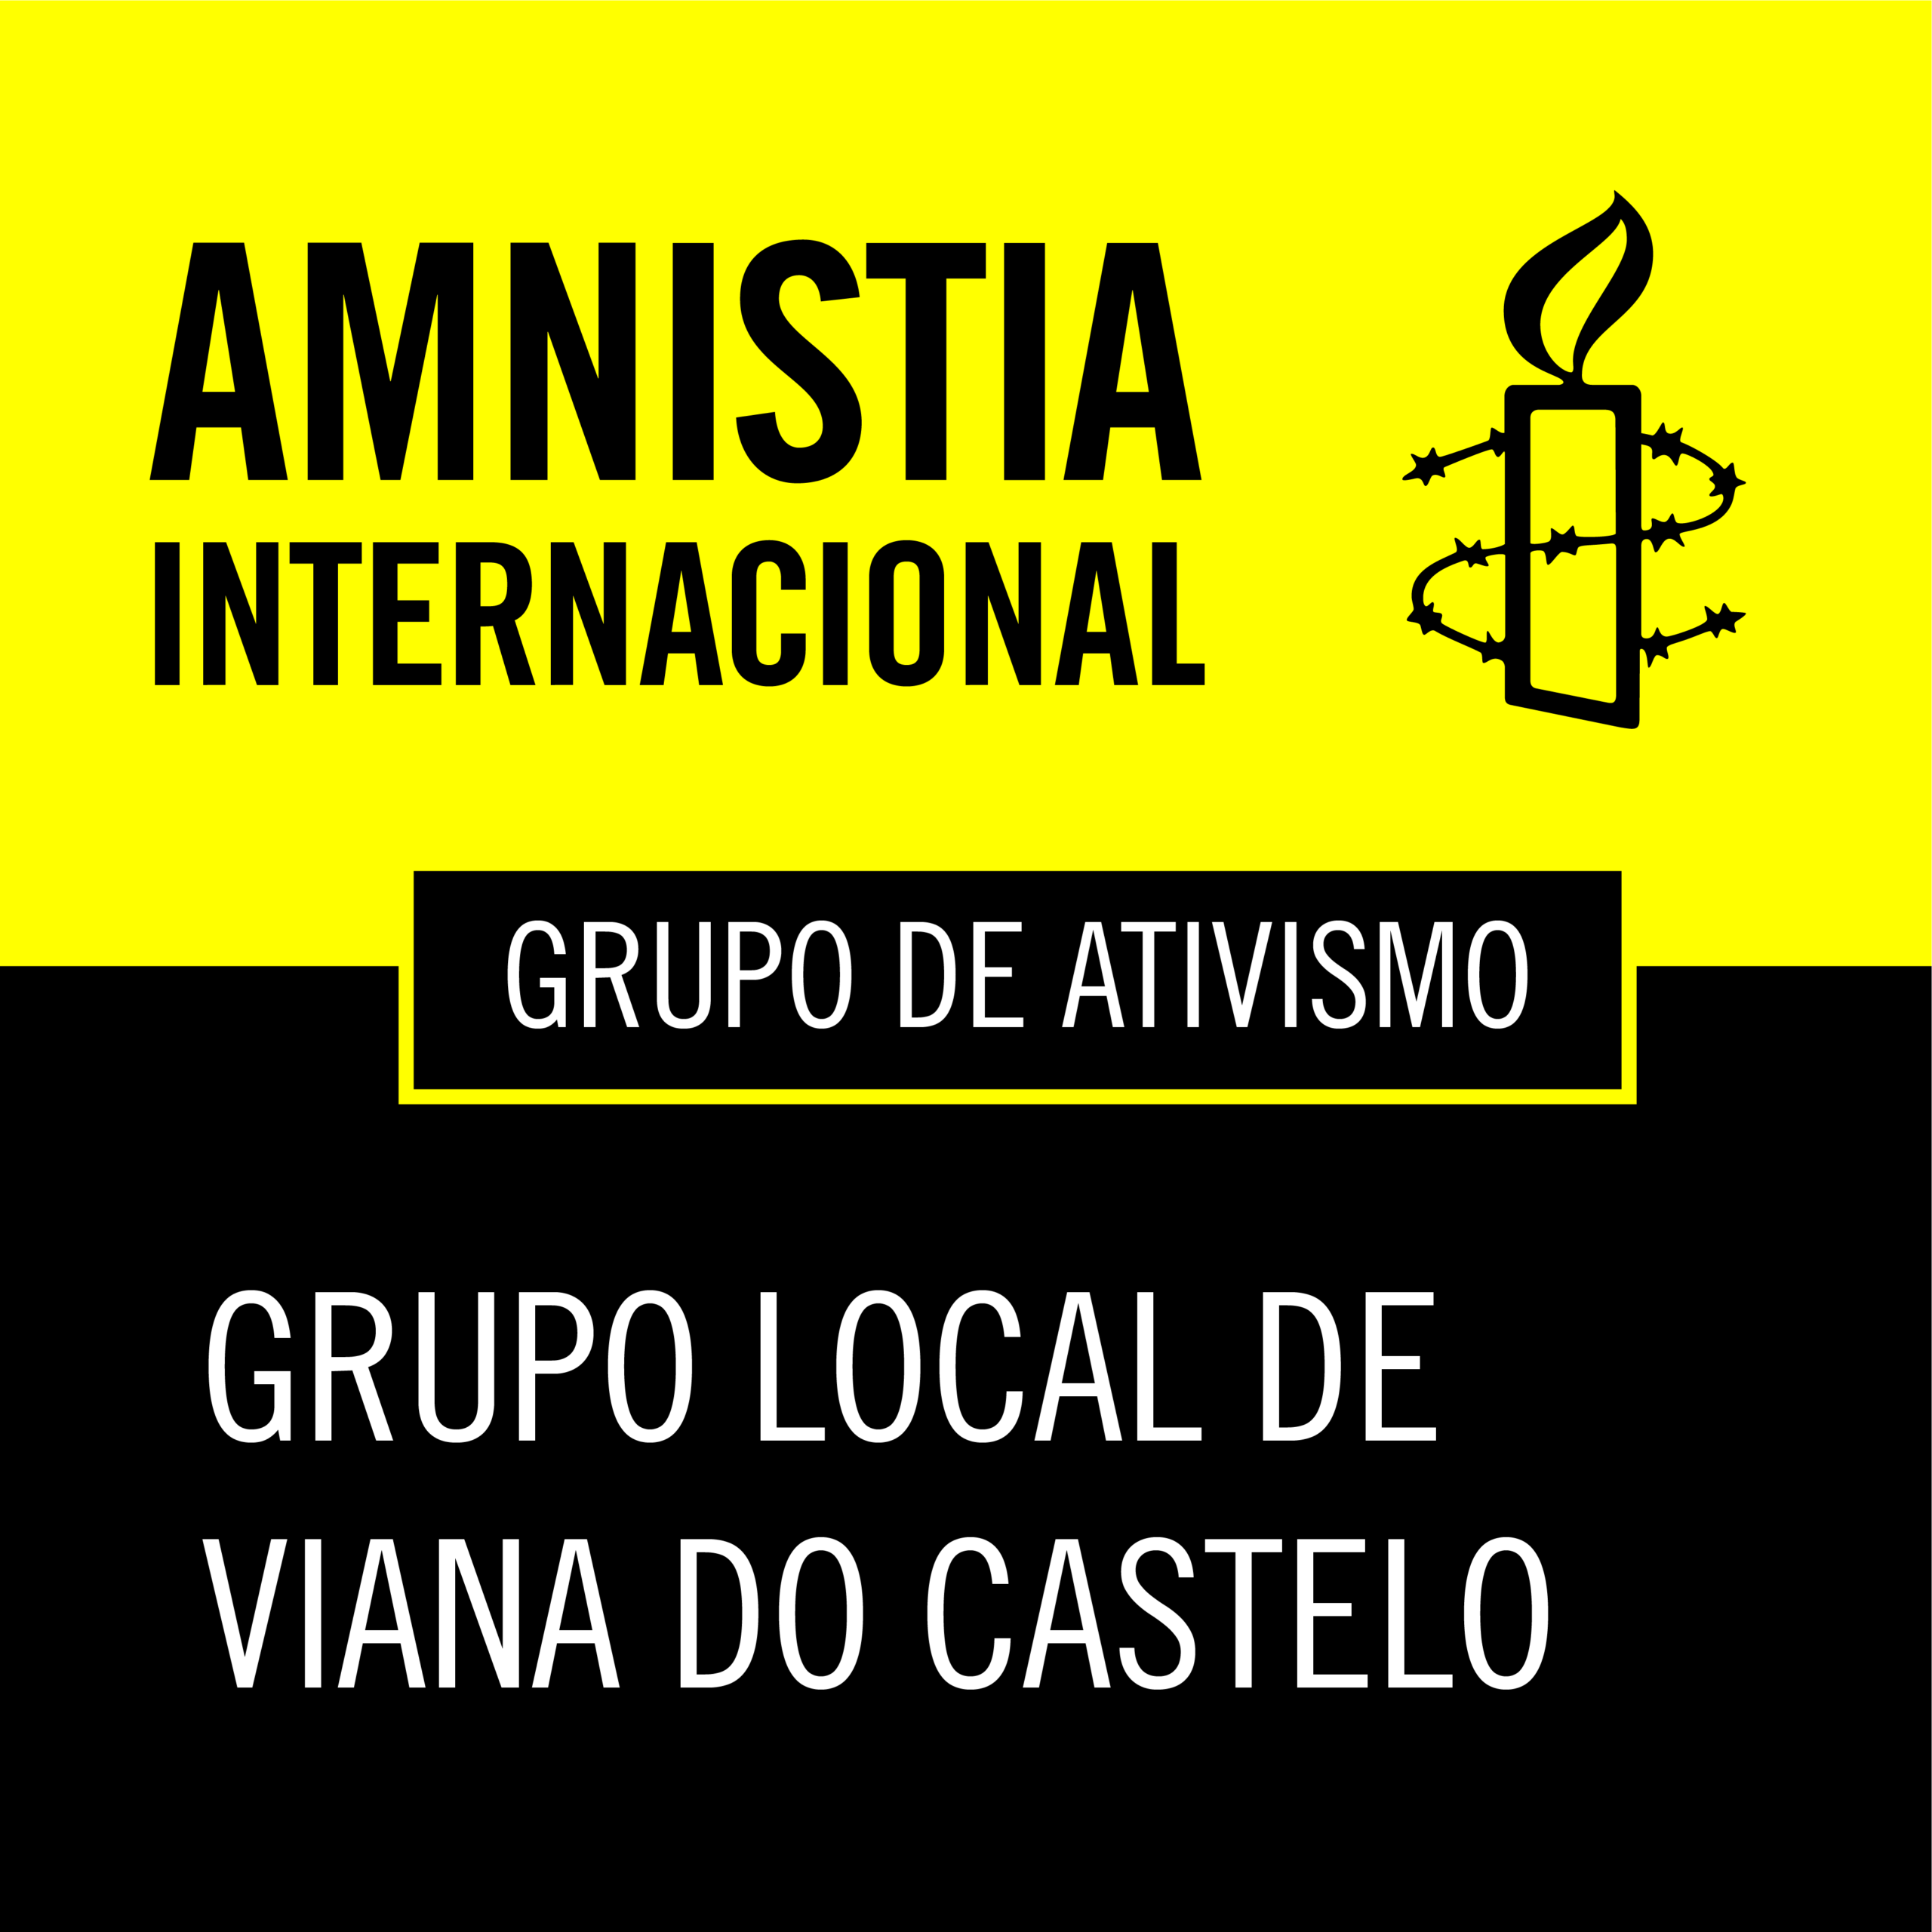 Grupo local de Viana do Castelo